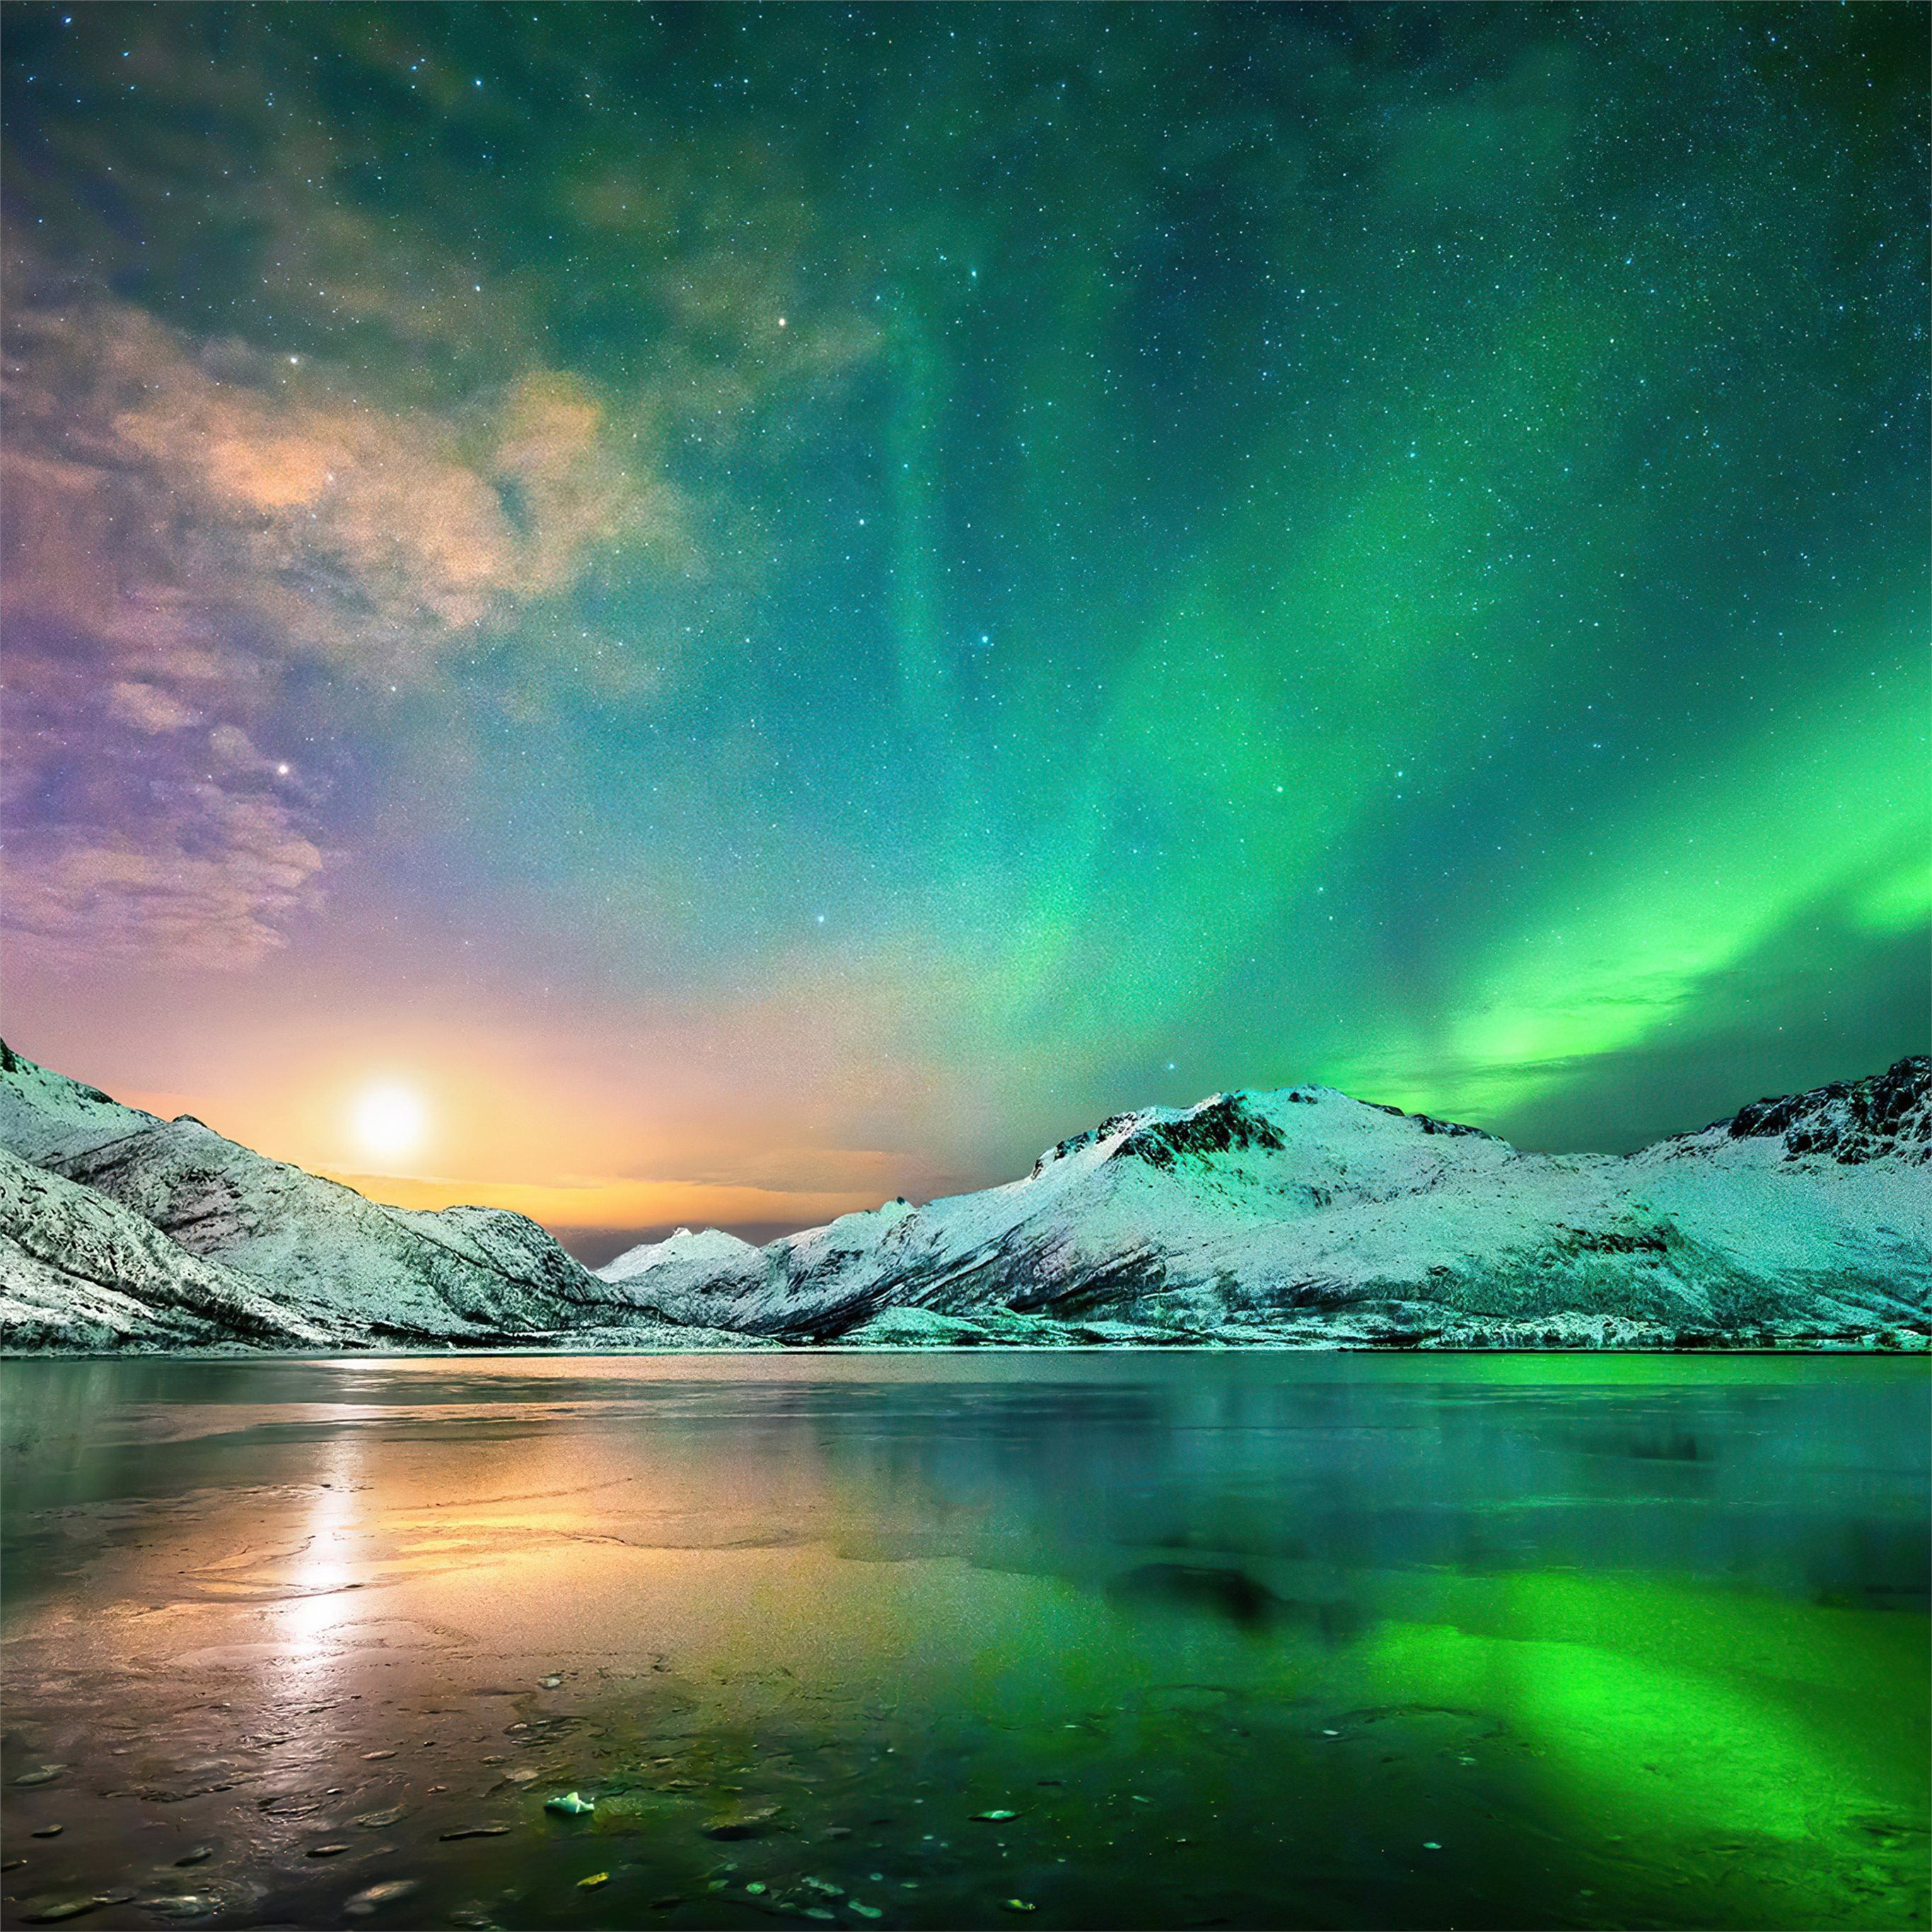 Hình nền Bắc cực: Bắc cực là một trong những điểm đến hấp dẫn nhất trên thế giới. Nếu bạn yêu thích khung cảnh tuyệt đẹp của nó, thì những hình nền Bắc cực đầy sức sống sẽ thật sự làm bạn phấn khích. Hãy trải nghiệm một chuyến phiêu lưu khó quên chỉ với một cái nhìn trên màn hình điện thoại của bạn.